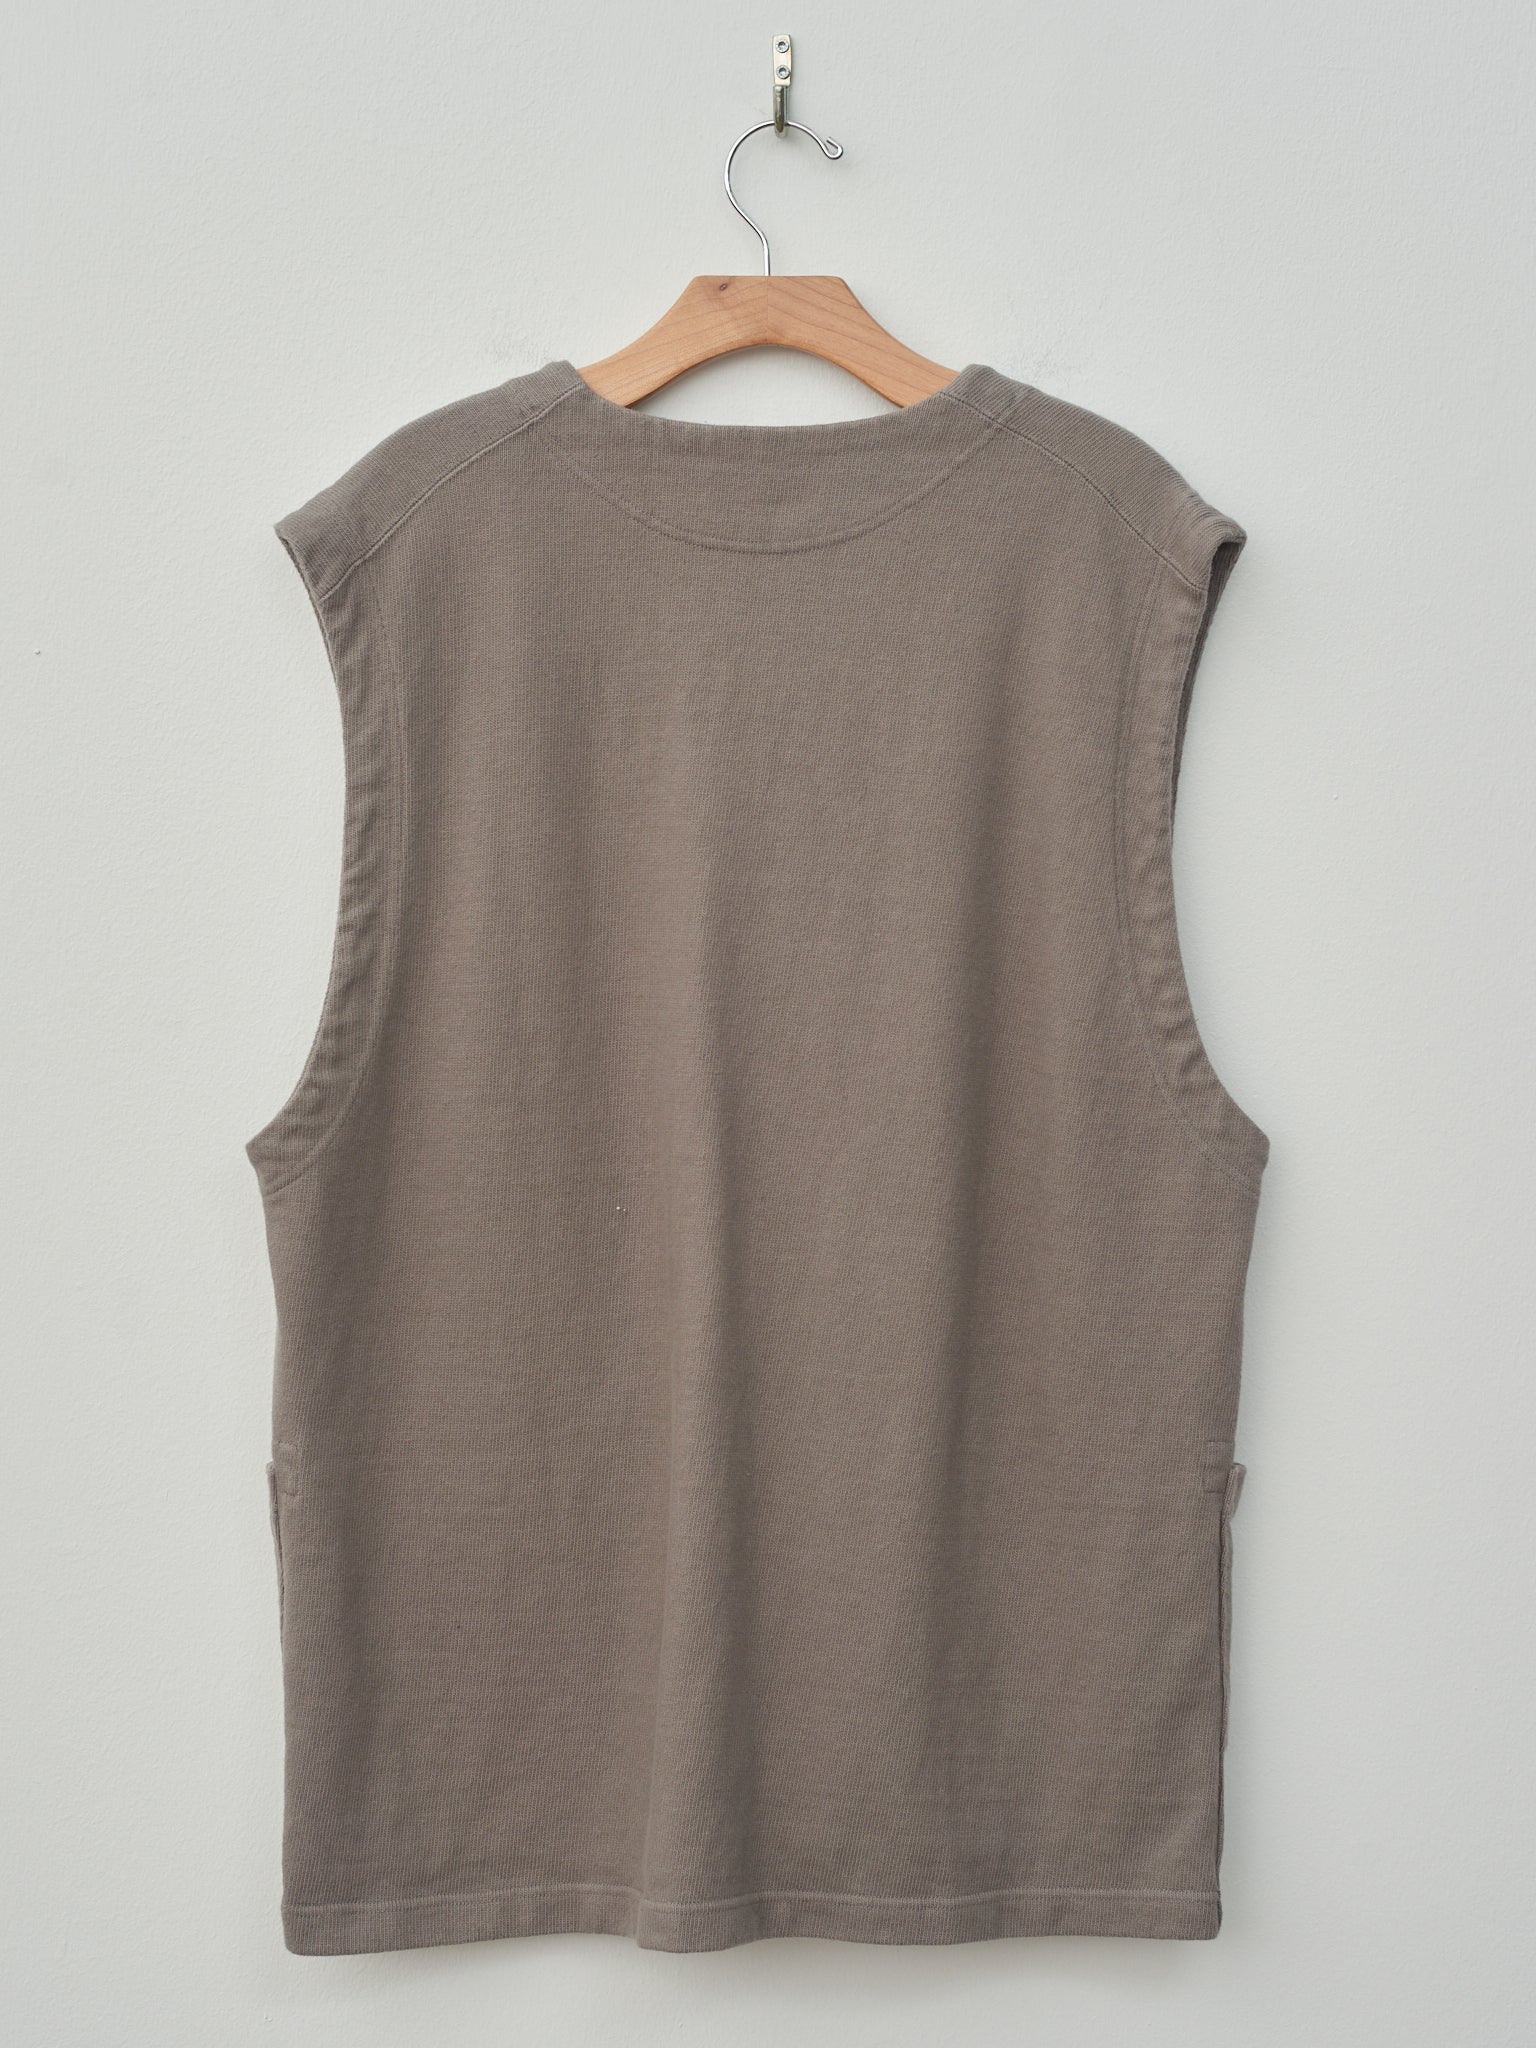 Namu Shop - ts(s) Soft Heavy Jersey Patch Pocket Vest - Gray